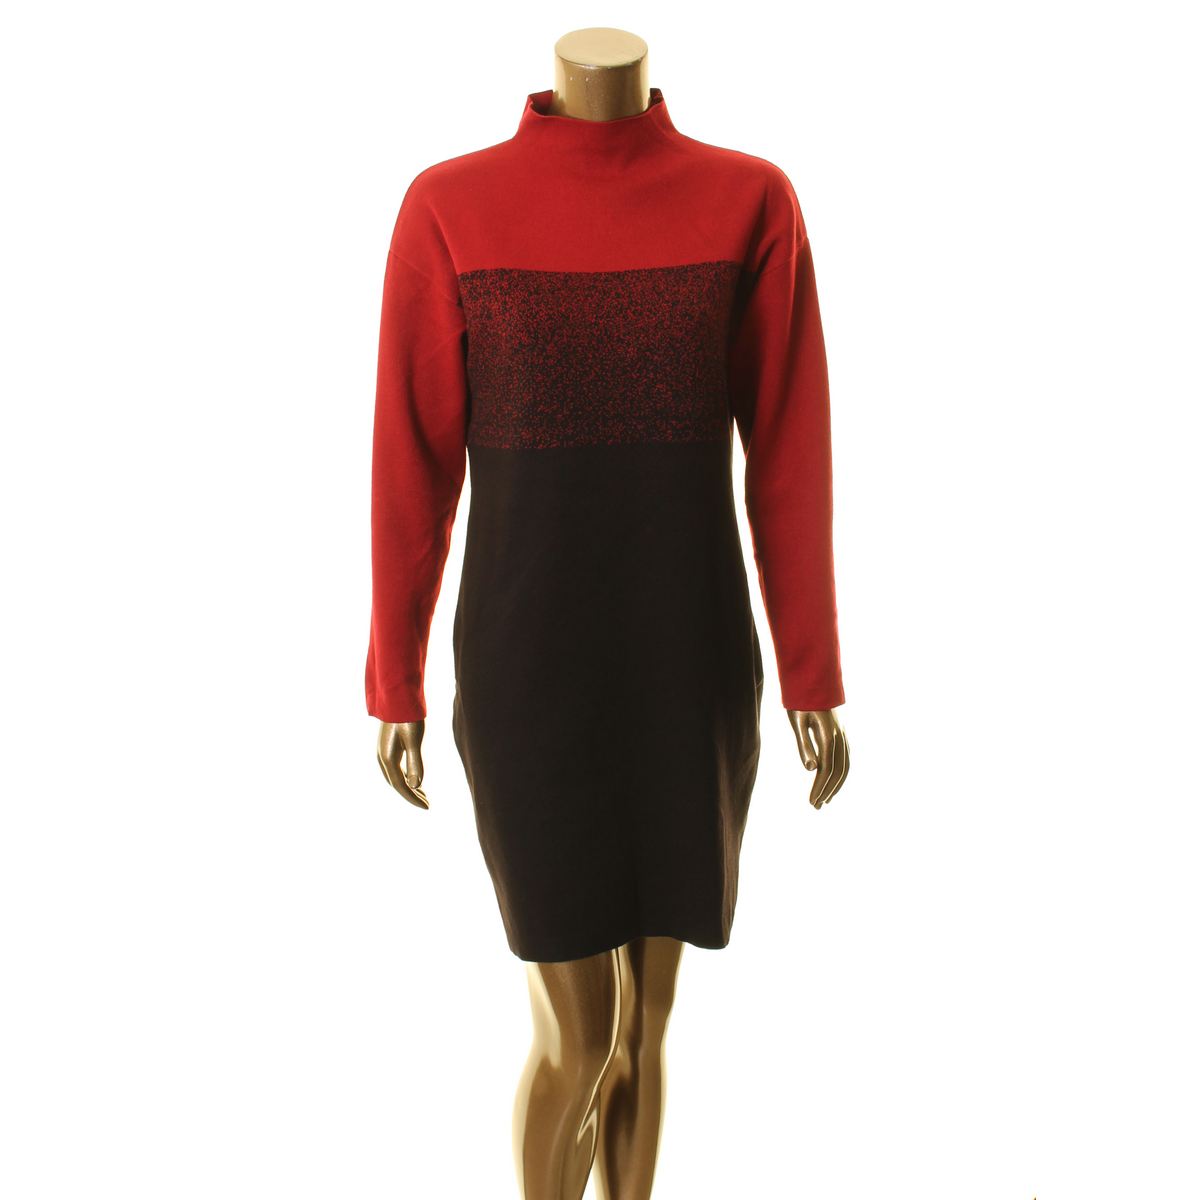 ANNE KLEIN NEW Women's Ombre Mock Neck Knit Mini Sweater Dress S TEDO ...